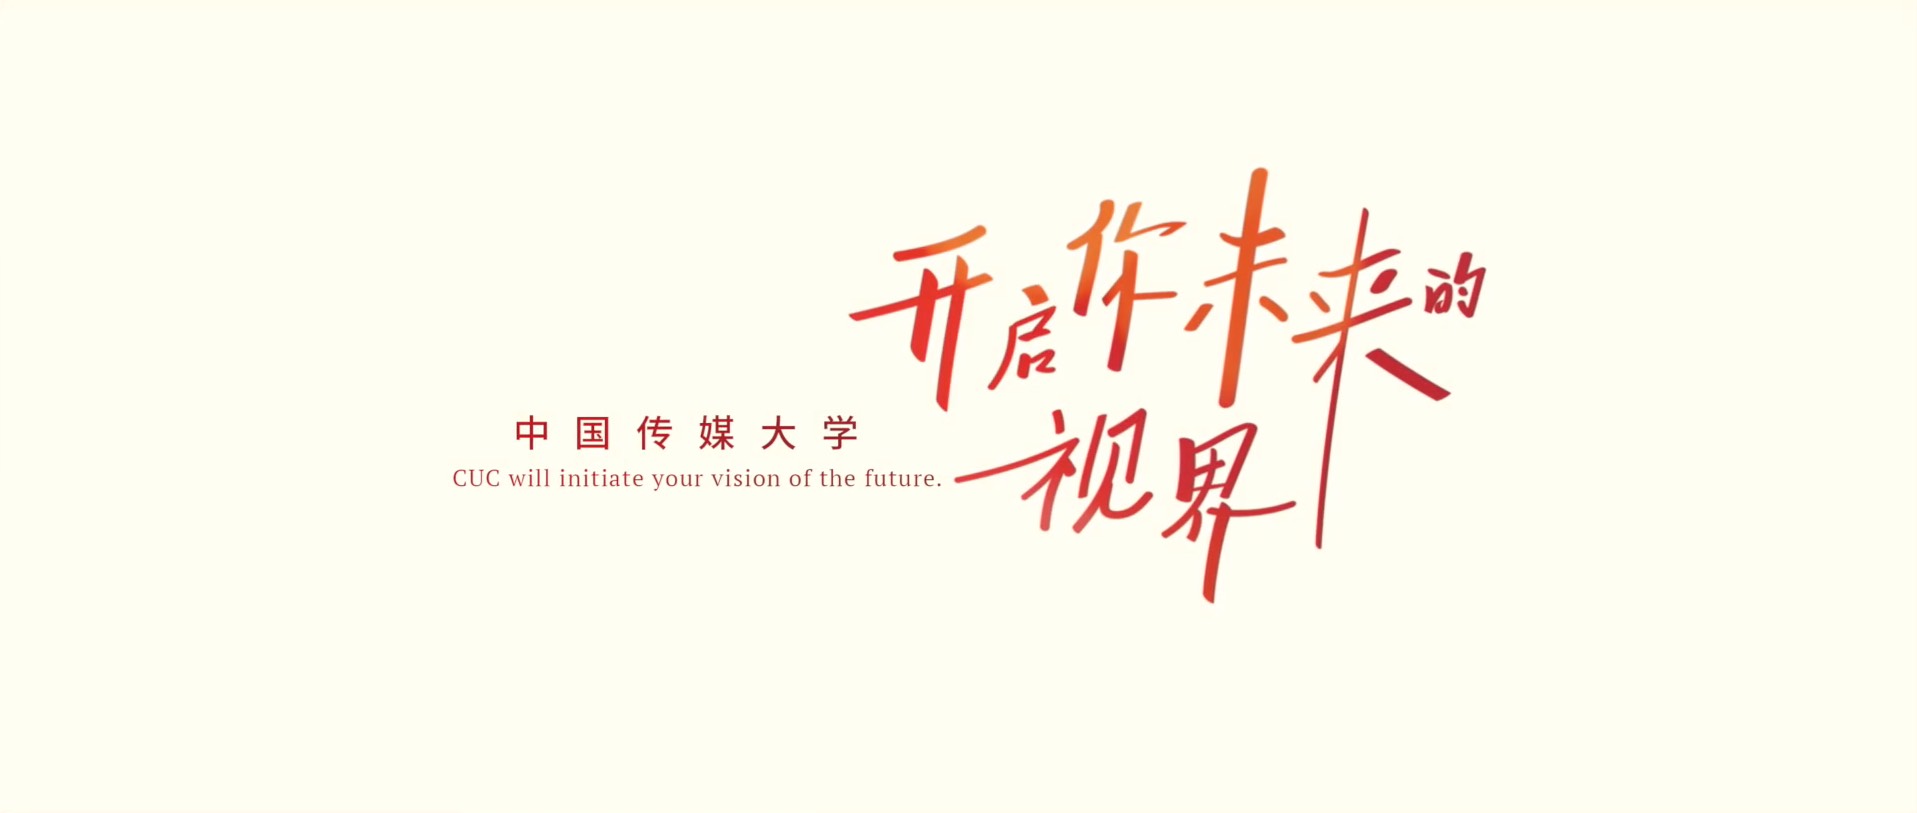 中国传媒大学2022年招生宣传片《心向未来》